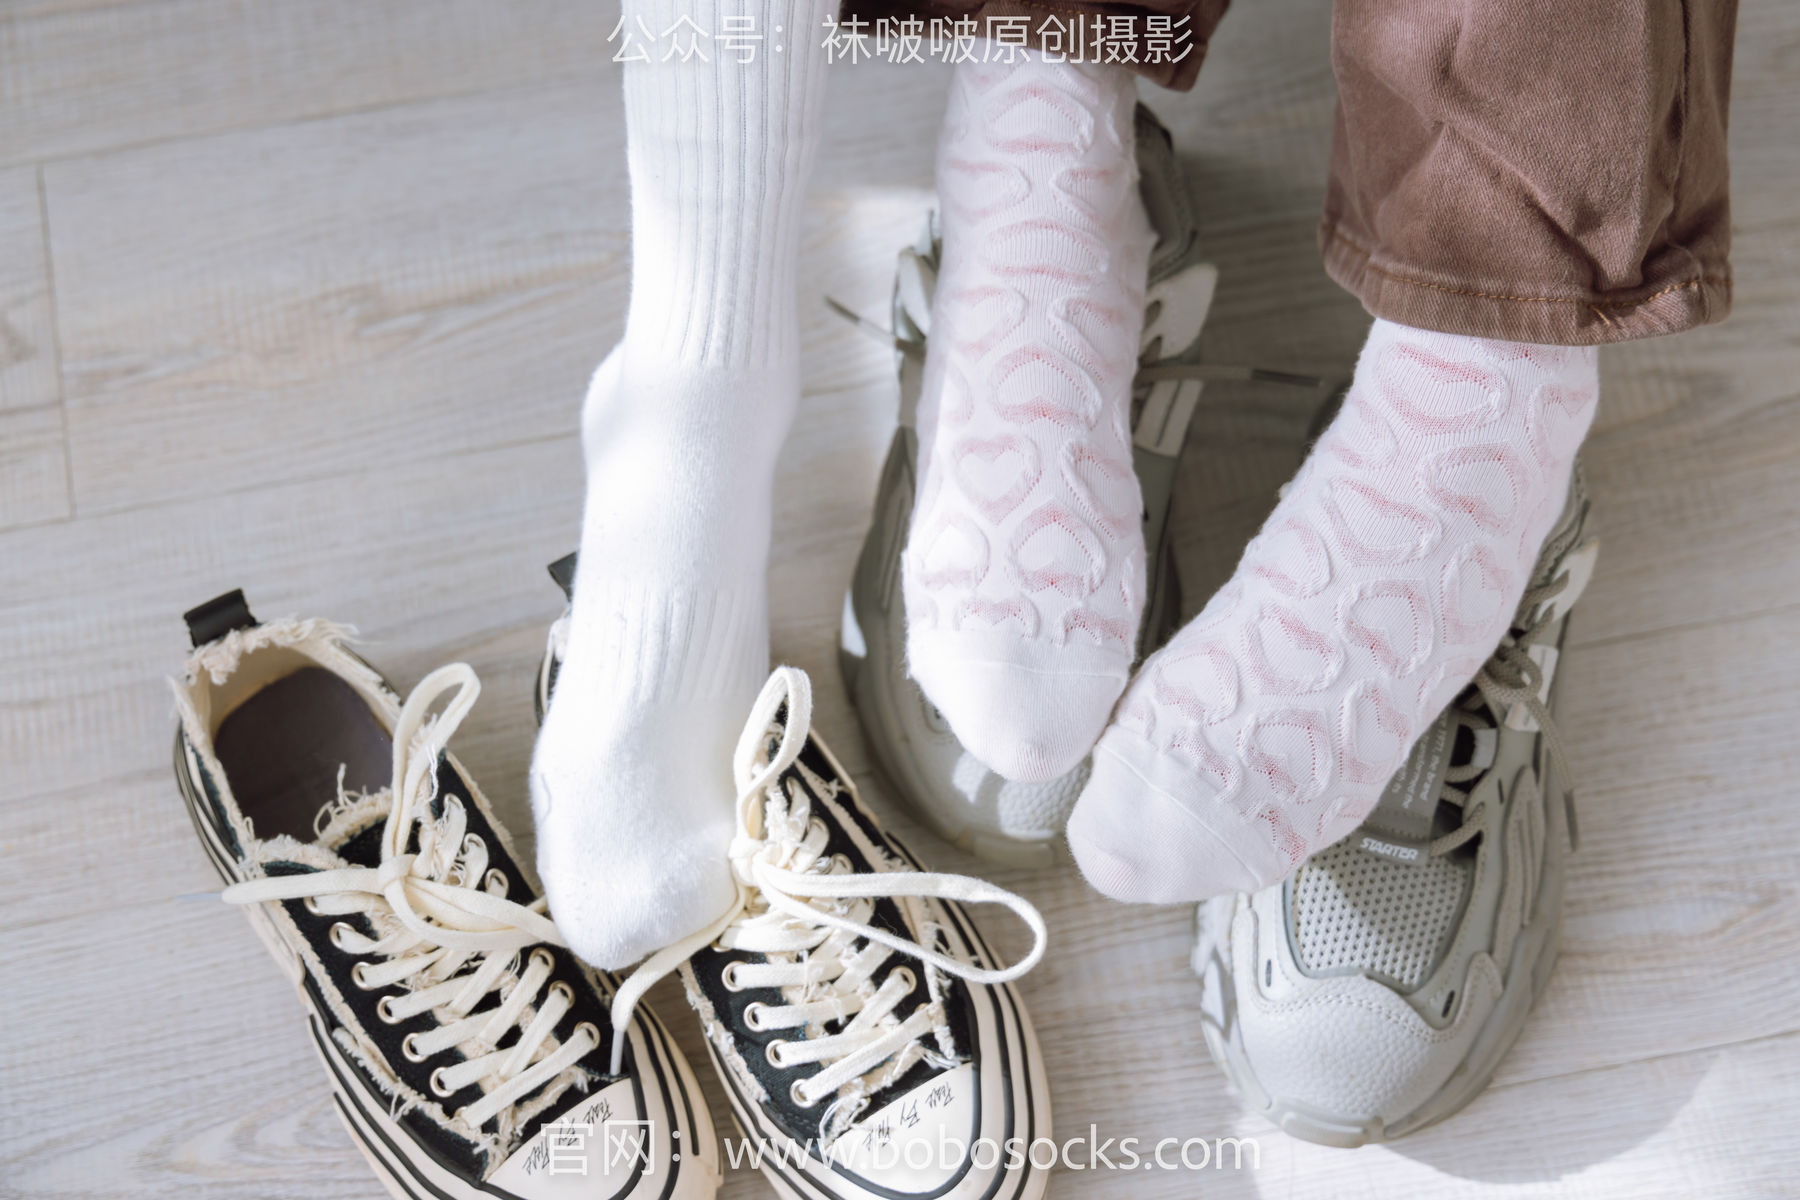 BoBoSocks袜啵啵 No.166 小甜豆稚予-板鞋、运动鞋、高跟鞋、白棉袜、蓝丝/(218P)